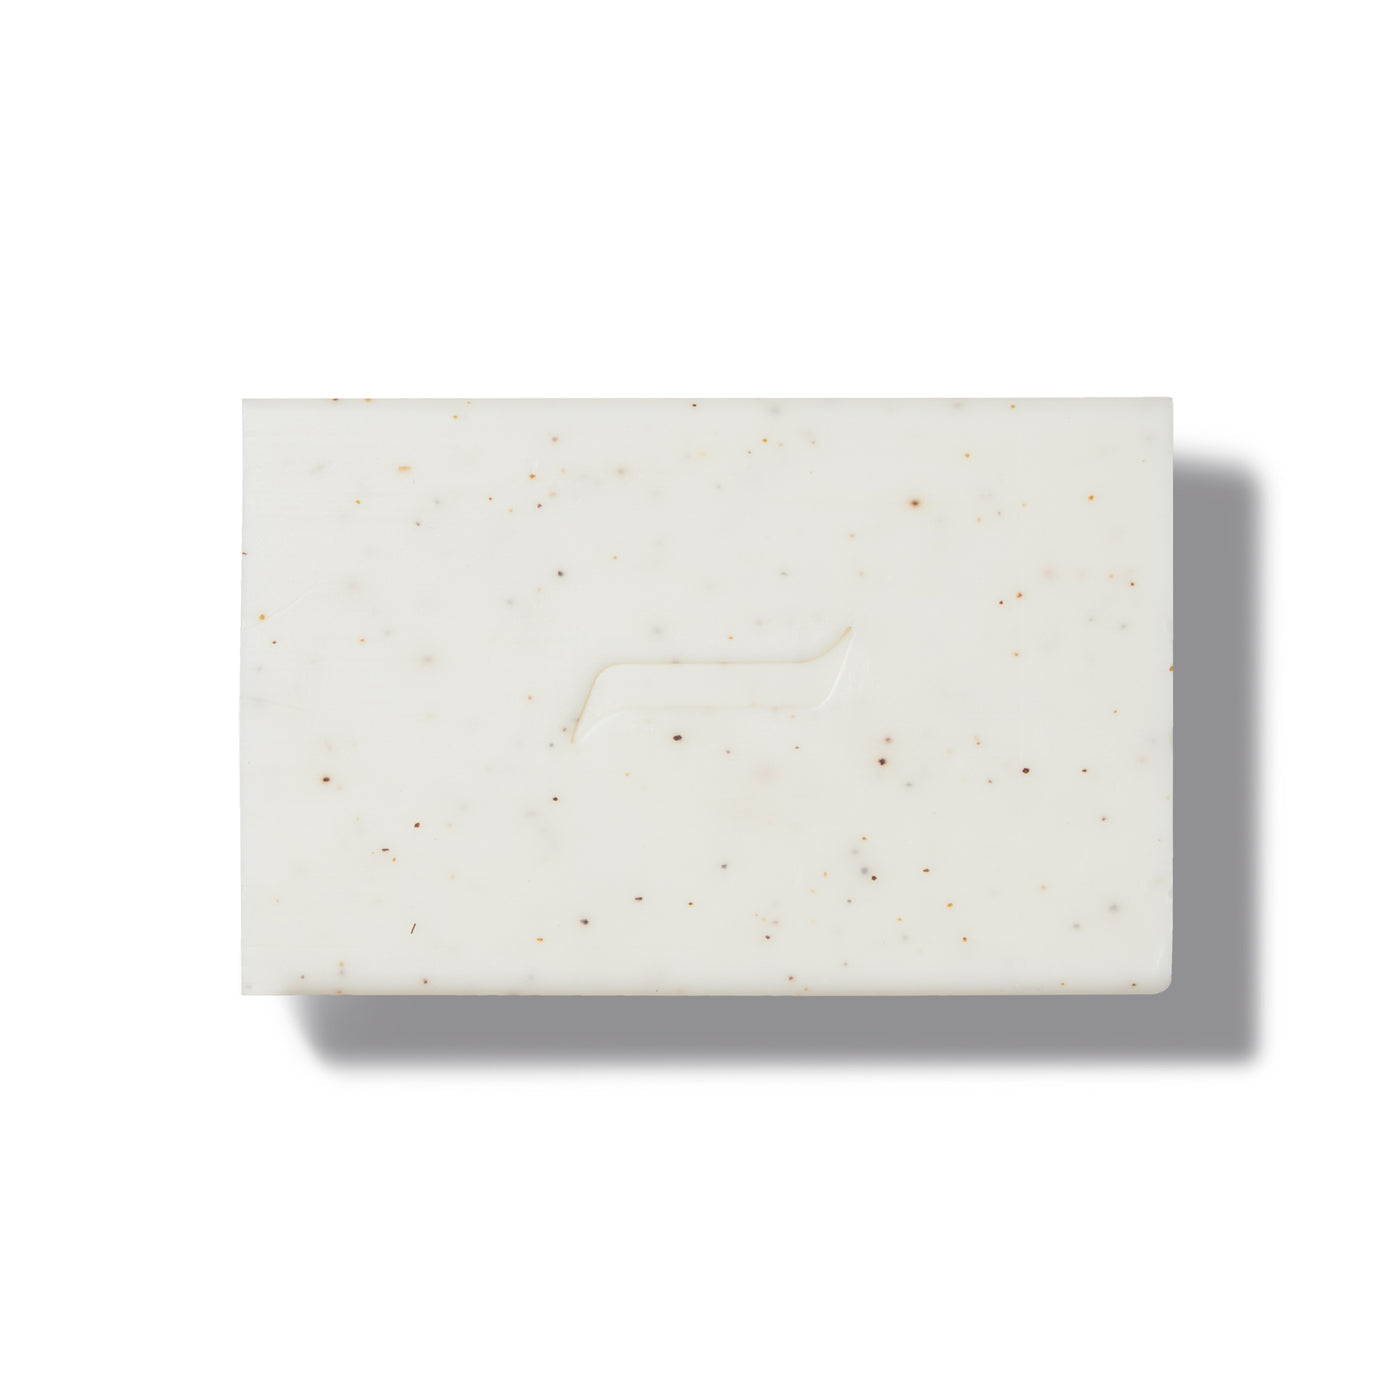 Yellowstone Mammoth soap